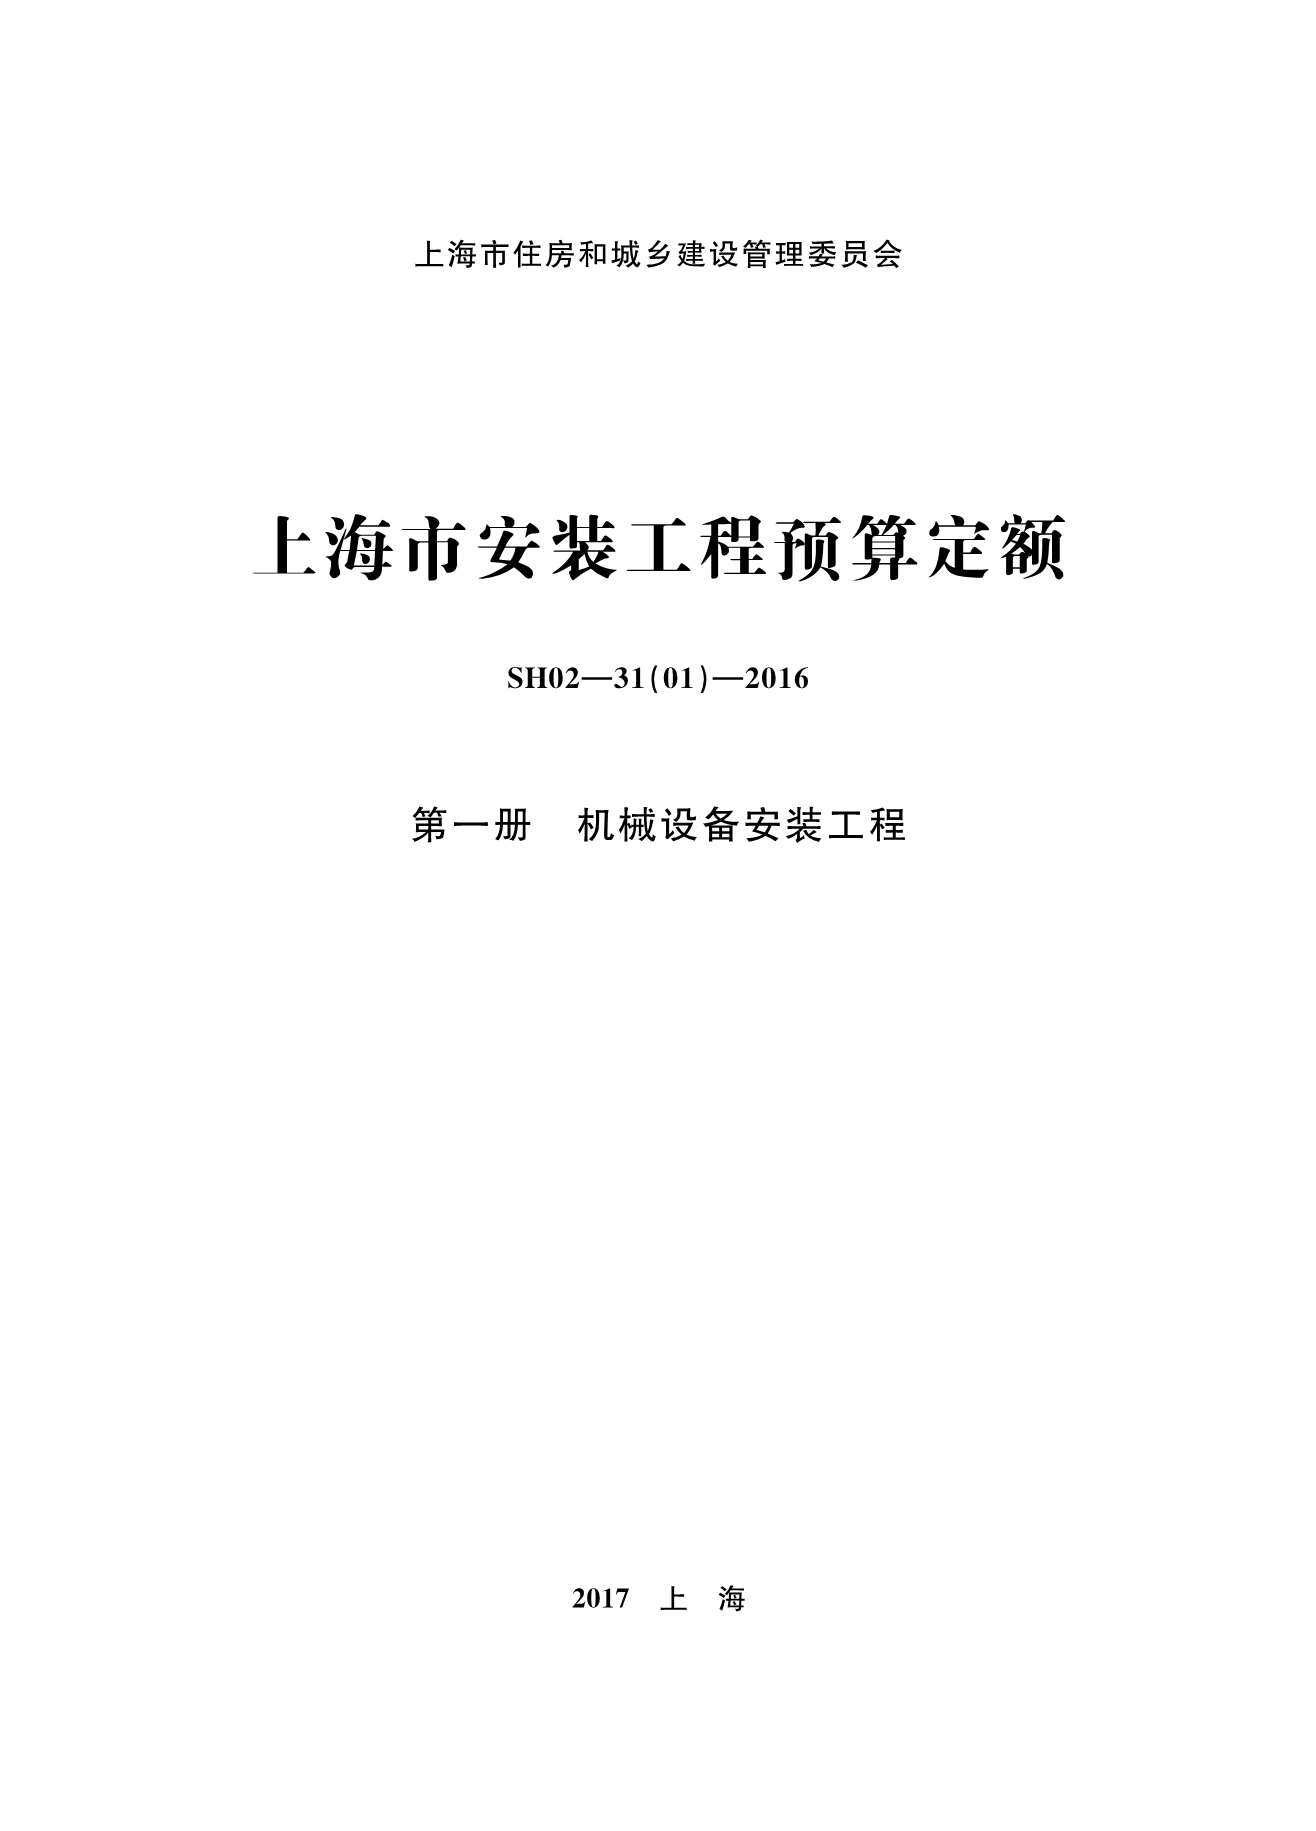 2016上海安装定额_第一册_机械设备安装工程